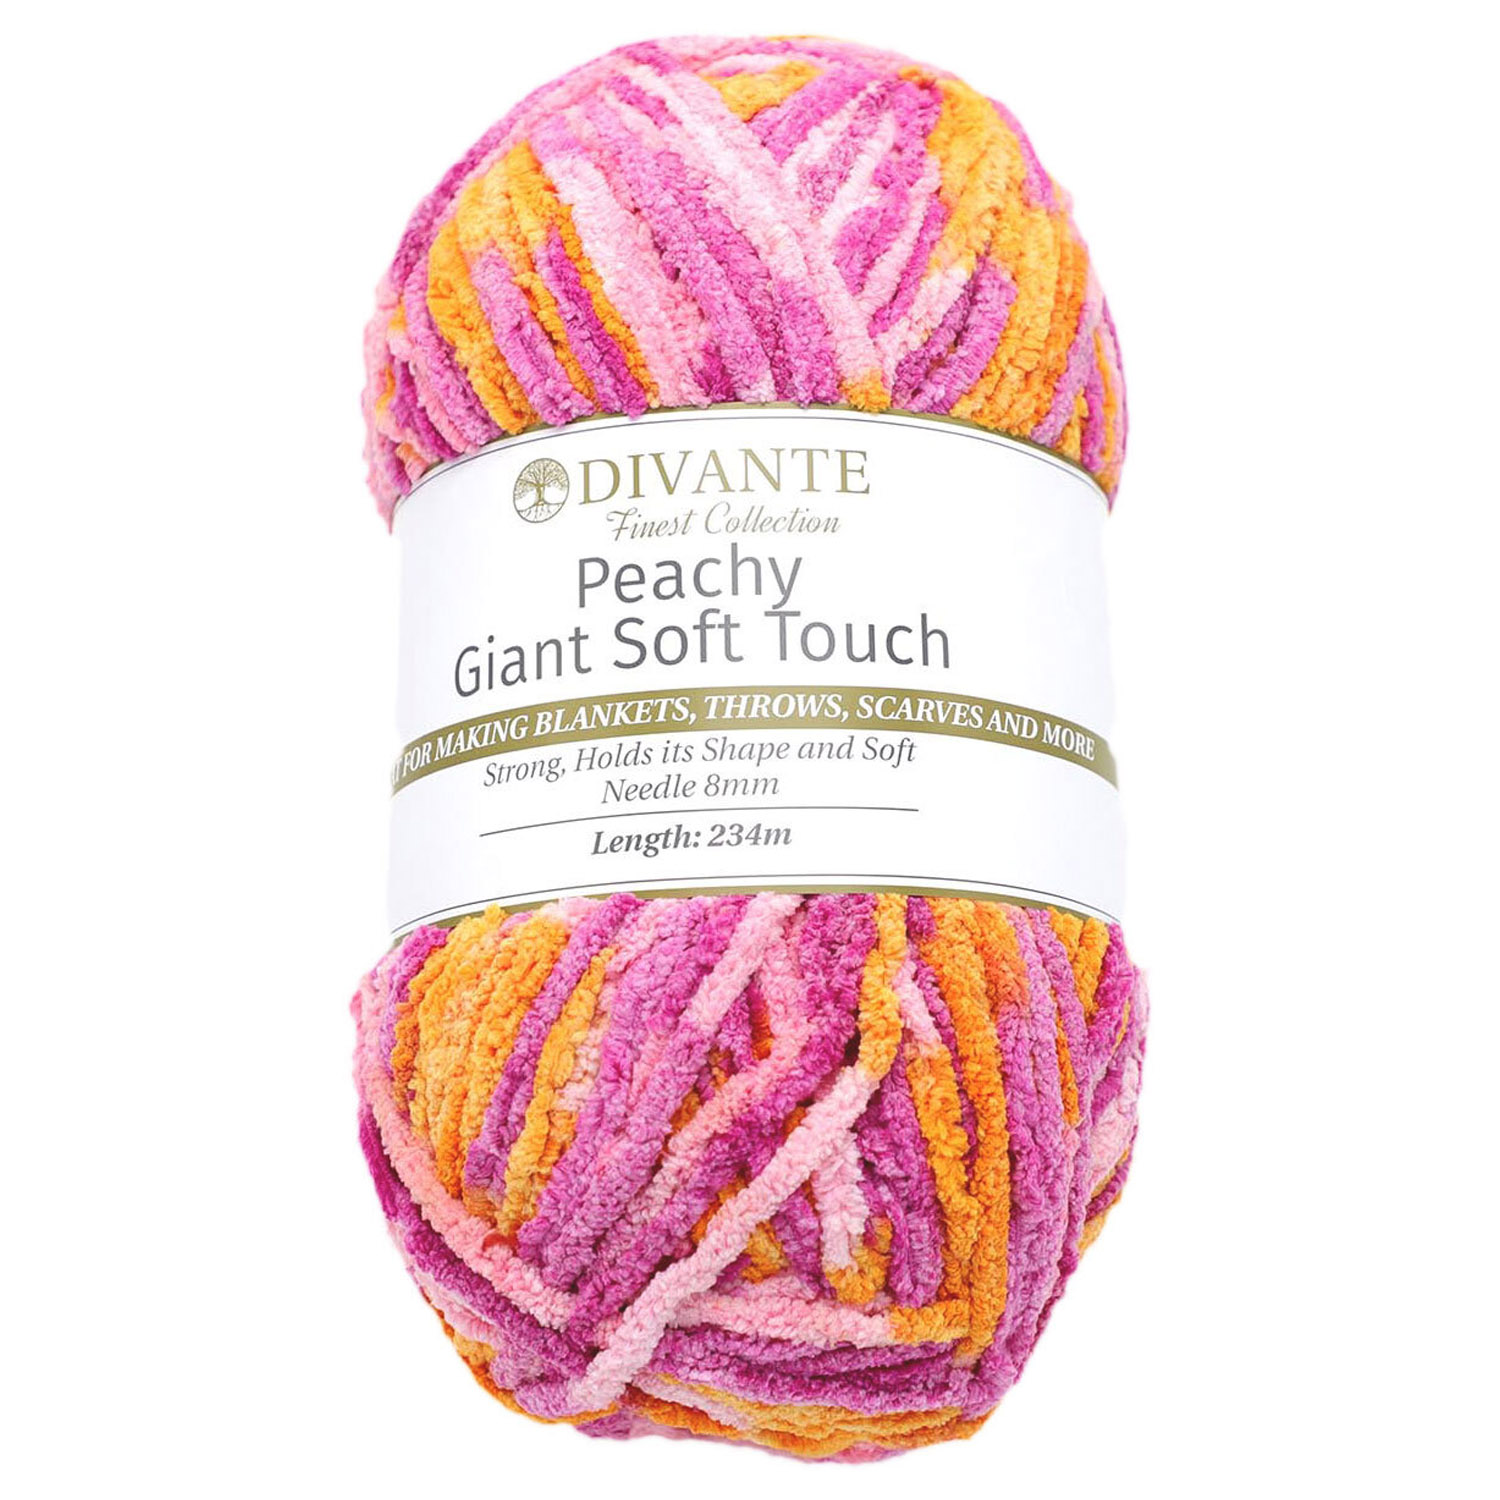 Divante Peachy Multi Colour Giant Soft Touch Wool 234m Image